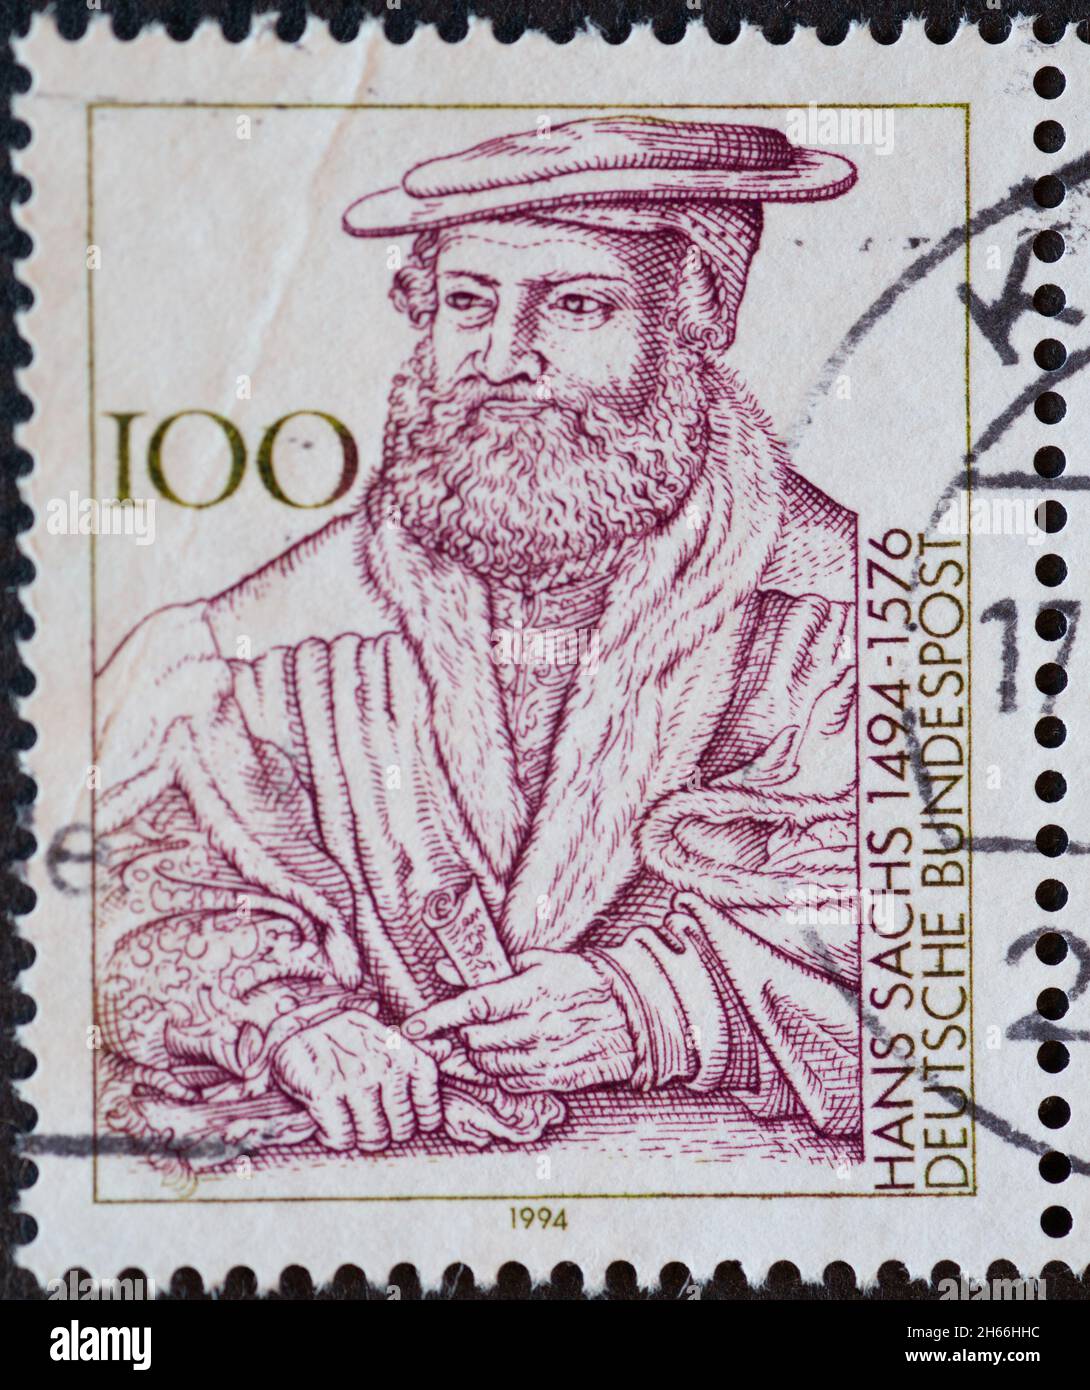 DEUTSCHLAND - UM 1994 : eine Briefmarke aus Deutschland, zeigt ein Porträt des Nürnberger Schuhmachers, Dichters, Sängers und Dramatikers Hans Sachs (149 Stockfoto